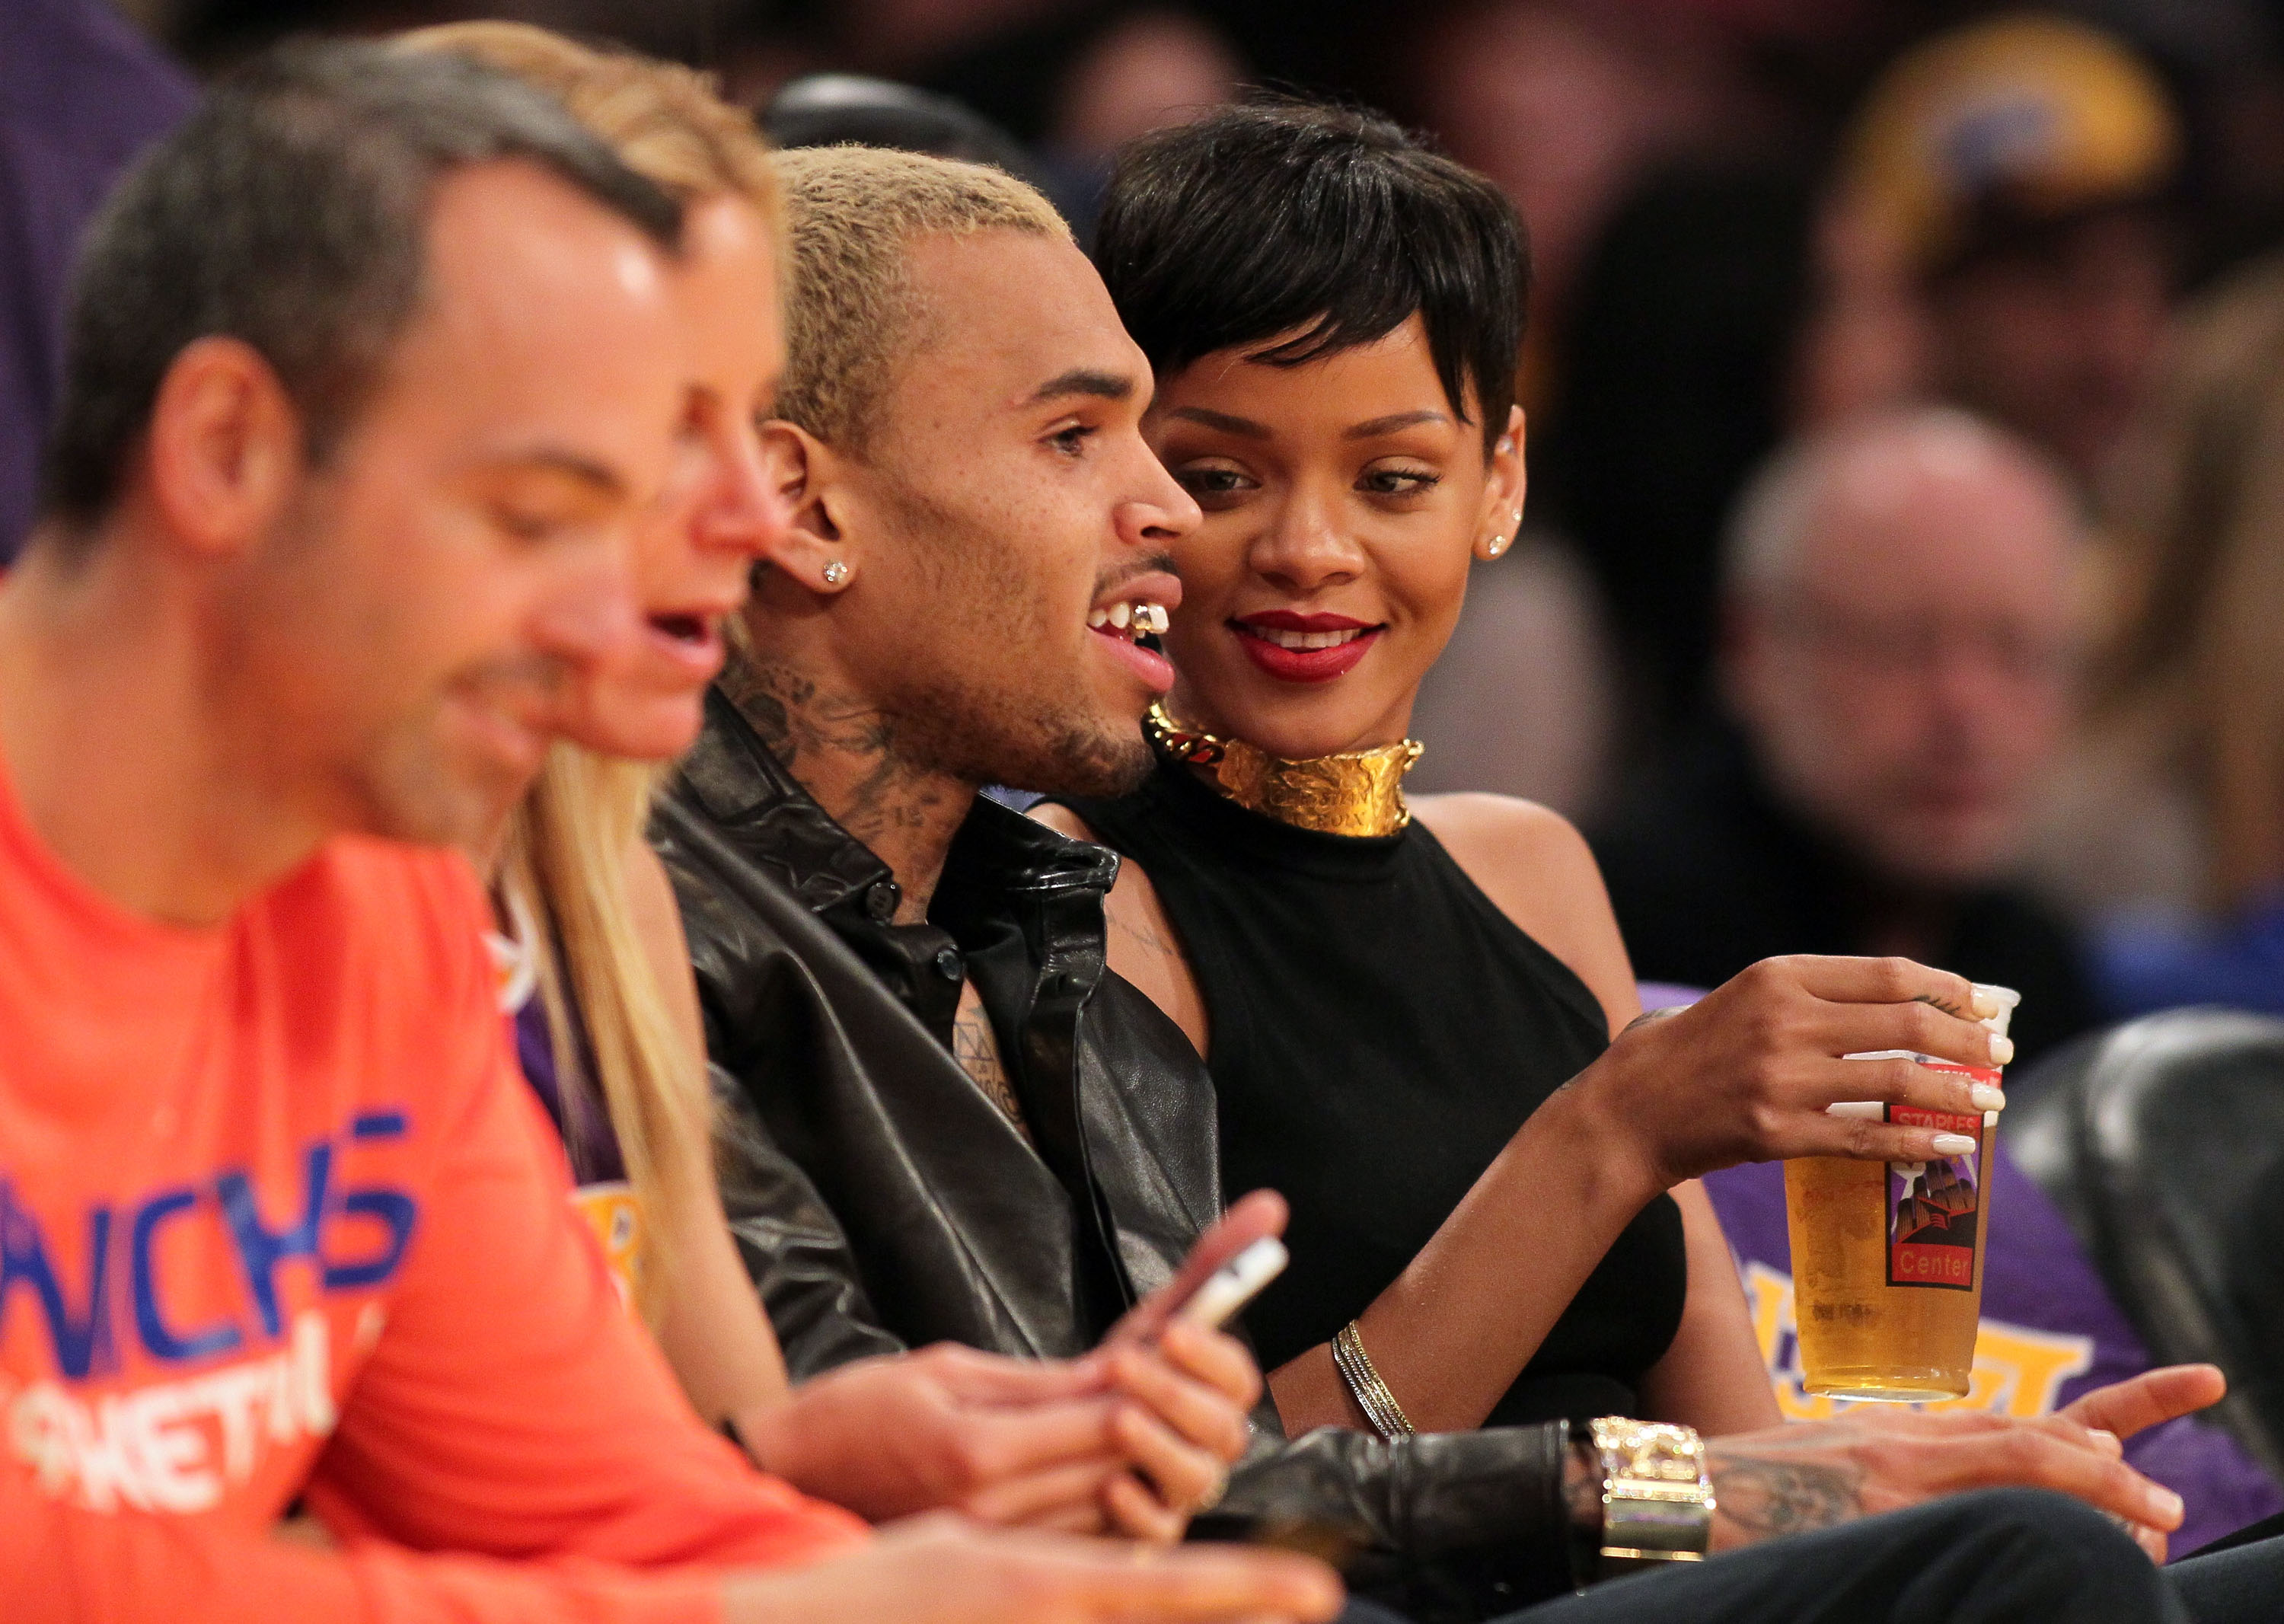 Chris Brown and Rihanna